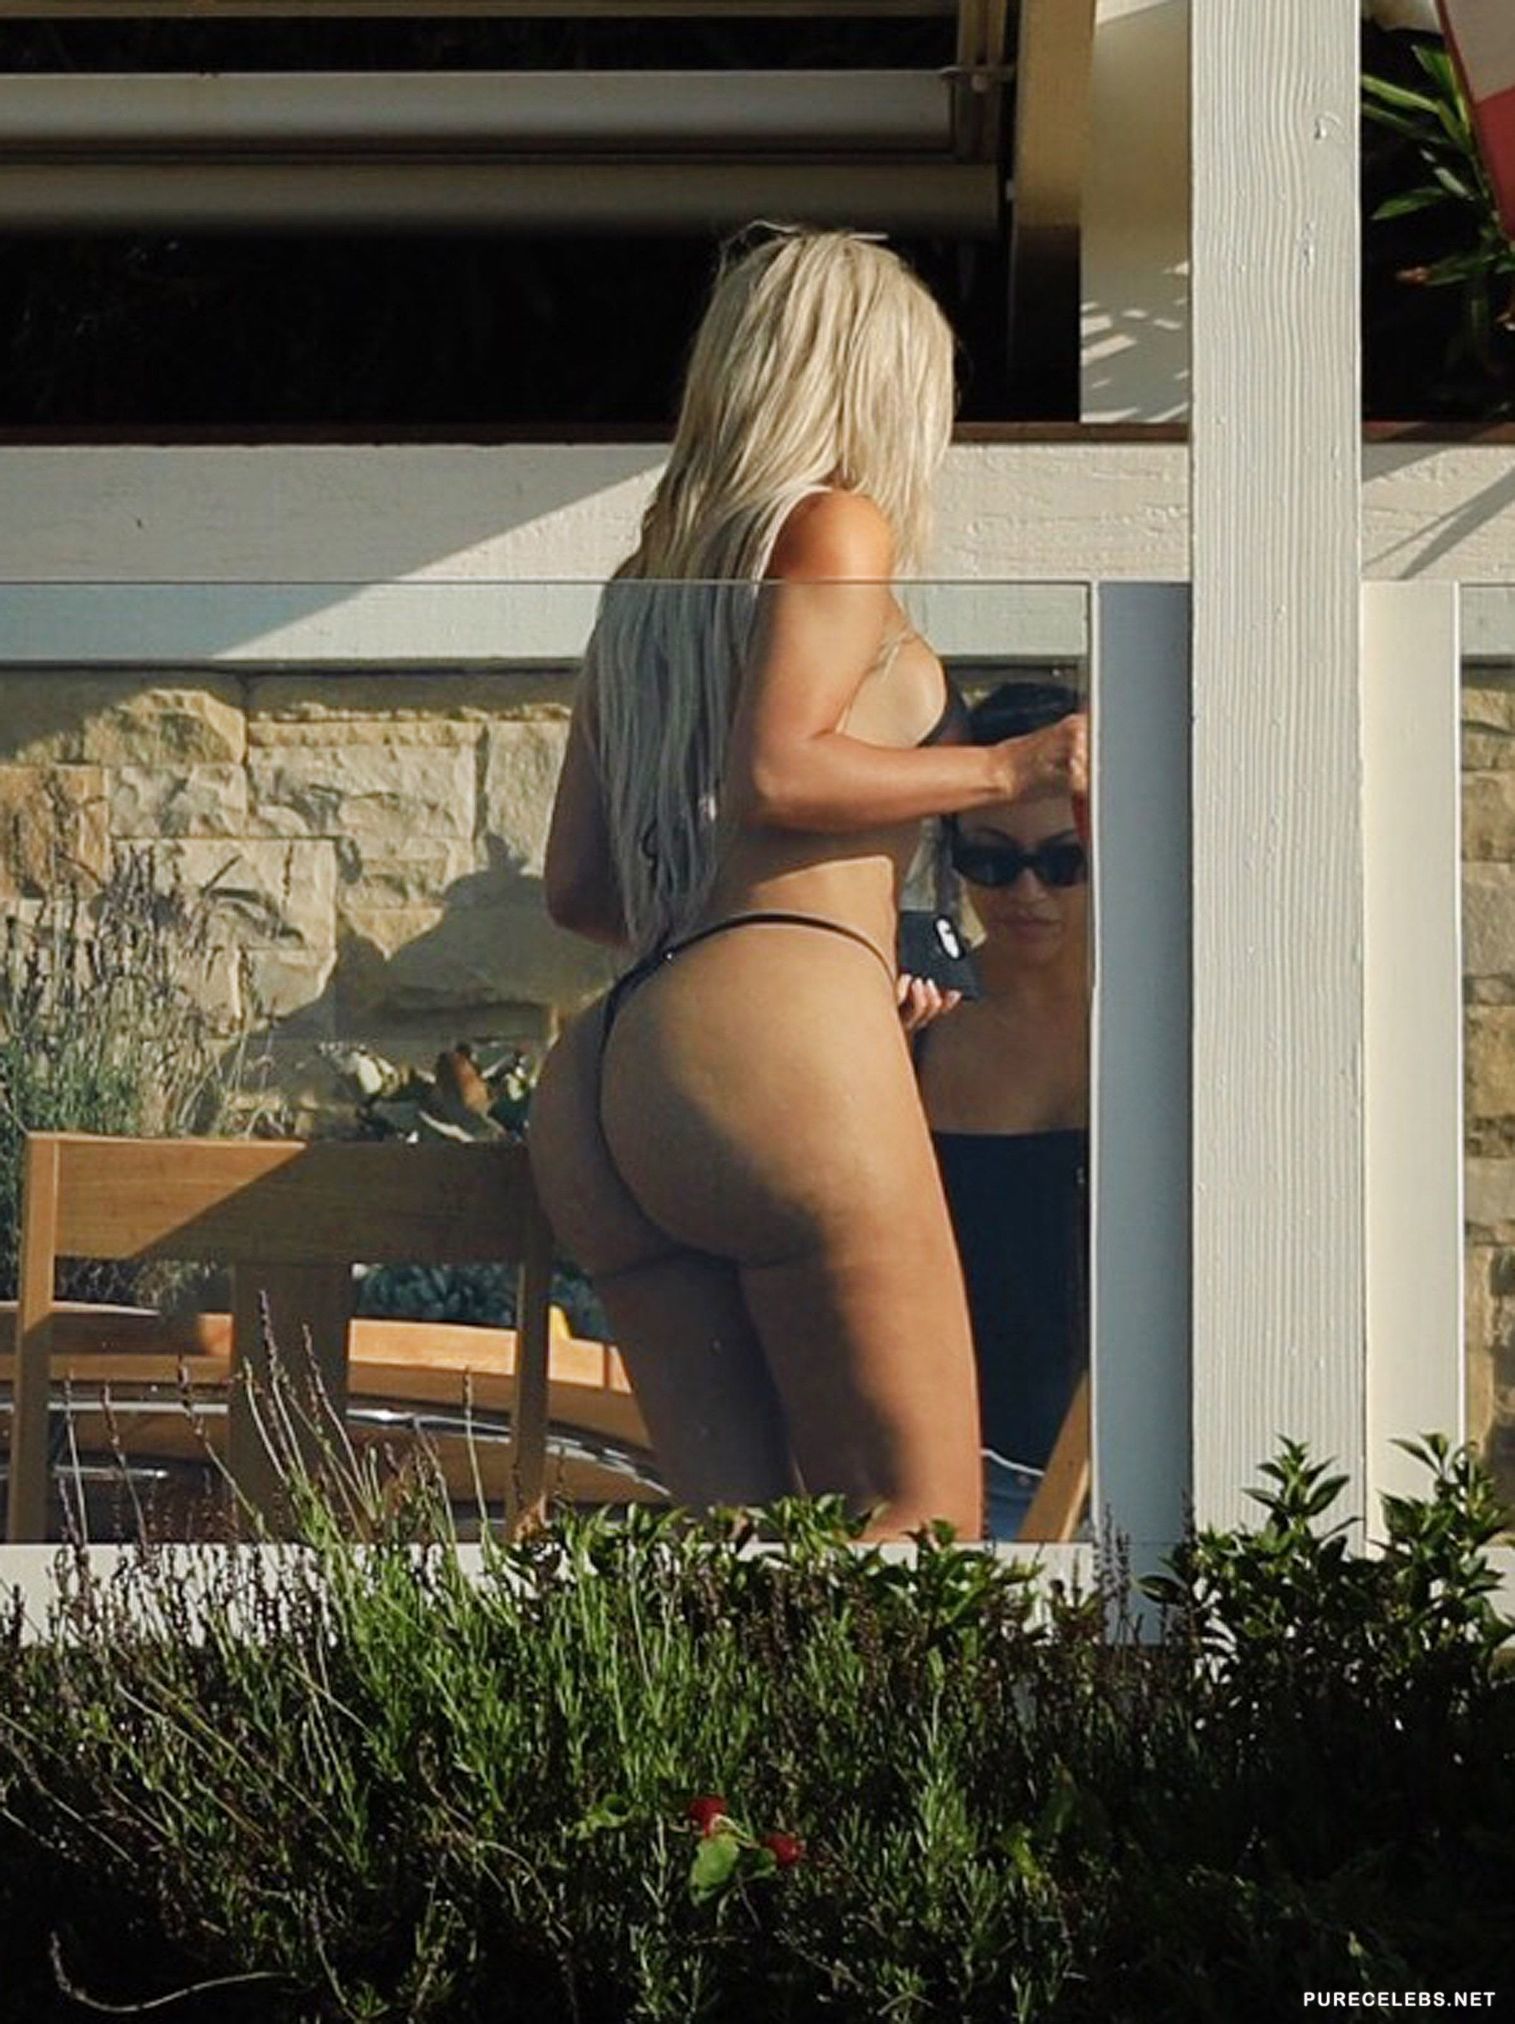 Kim Kardashian Sunbathing In Tihy Bikini On The Beach in Malibu image